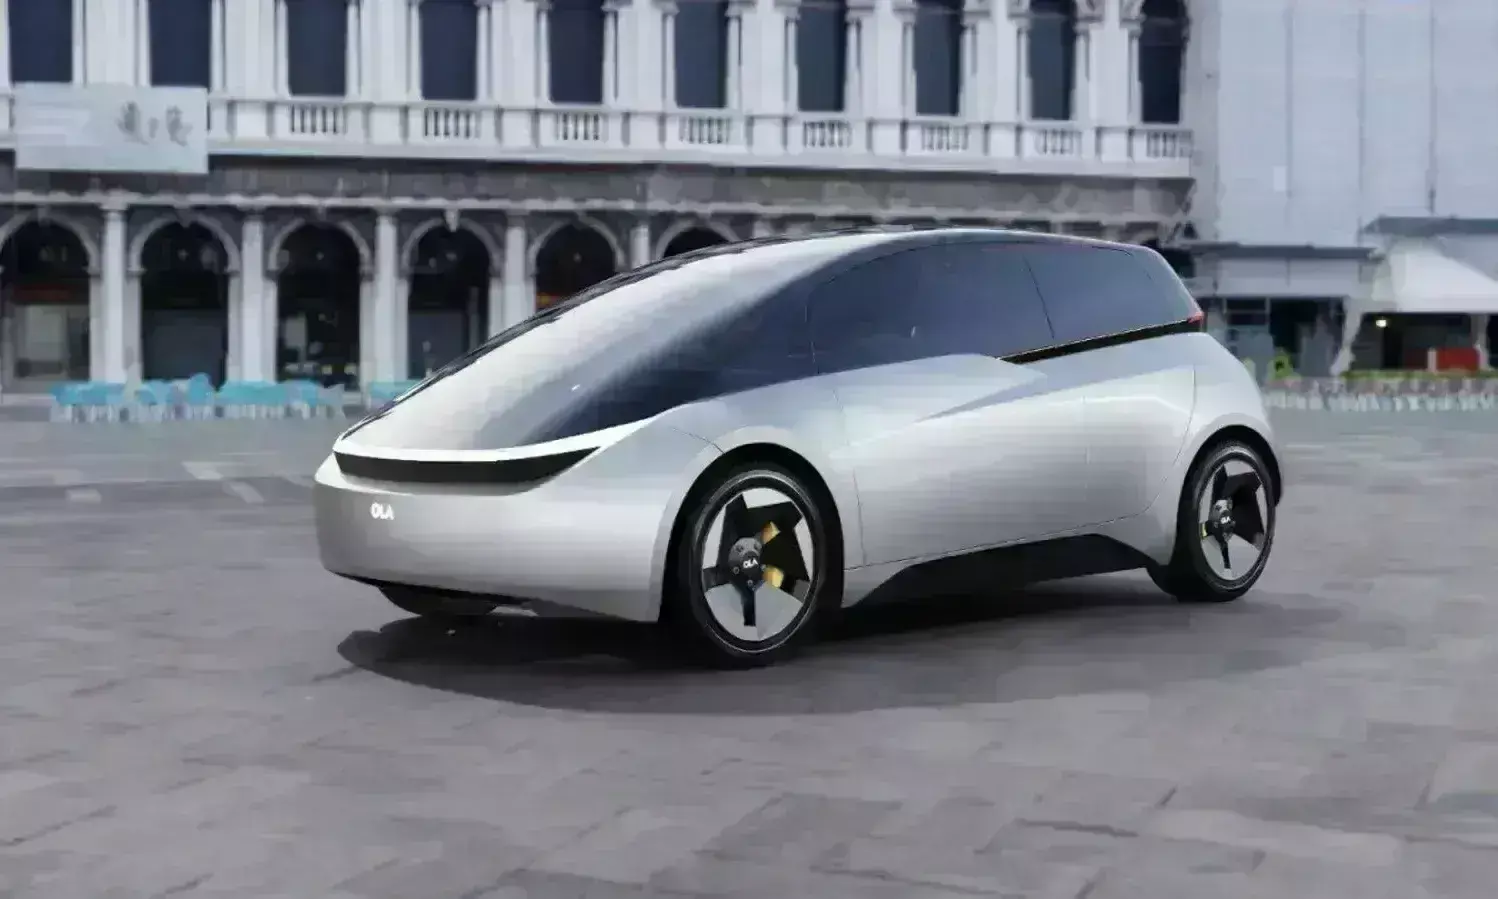 Ola जल्द लांच करेगी इलेक्ट्रिक कार, सिंगल चार्ज में चलेगी 500 किमी